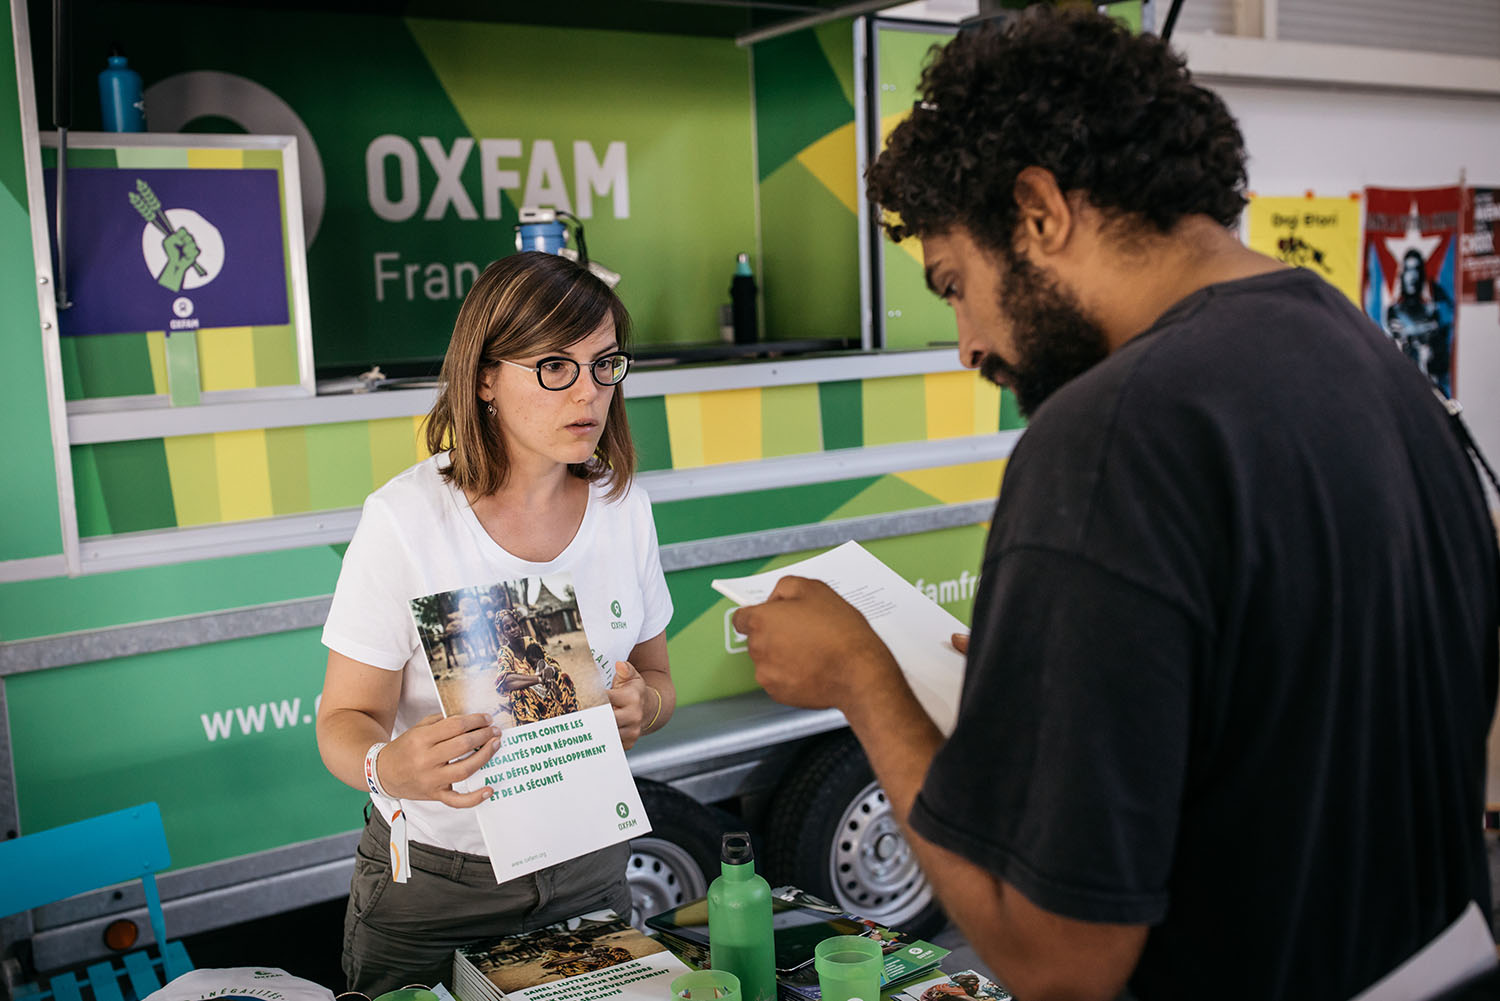 Stand Oxfam France à l'Alter G7 en août 2019